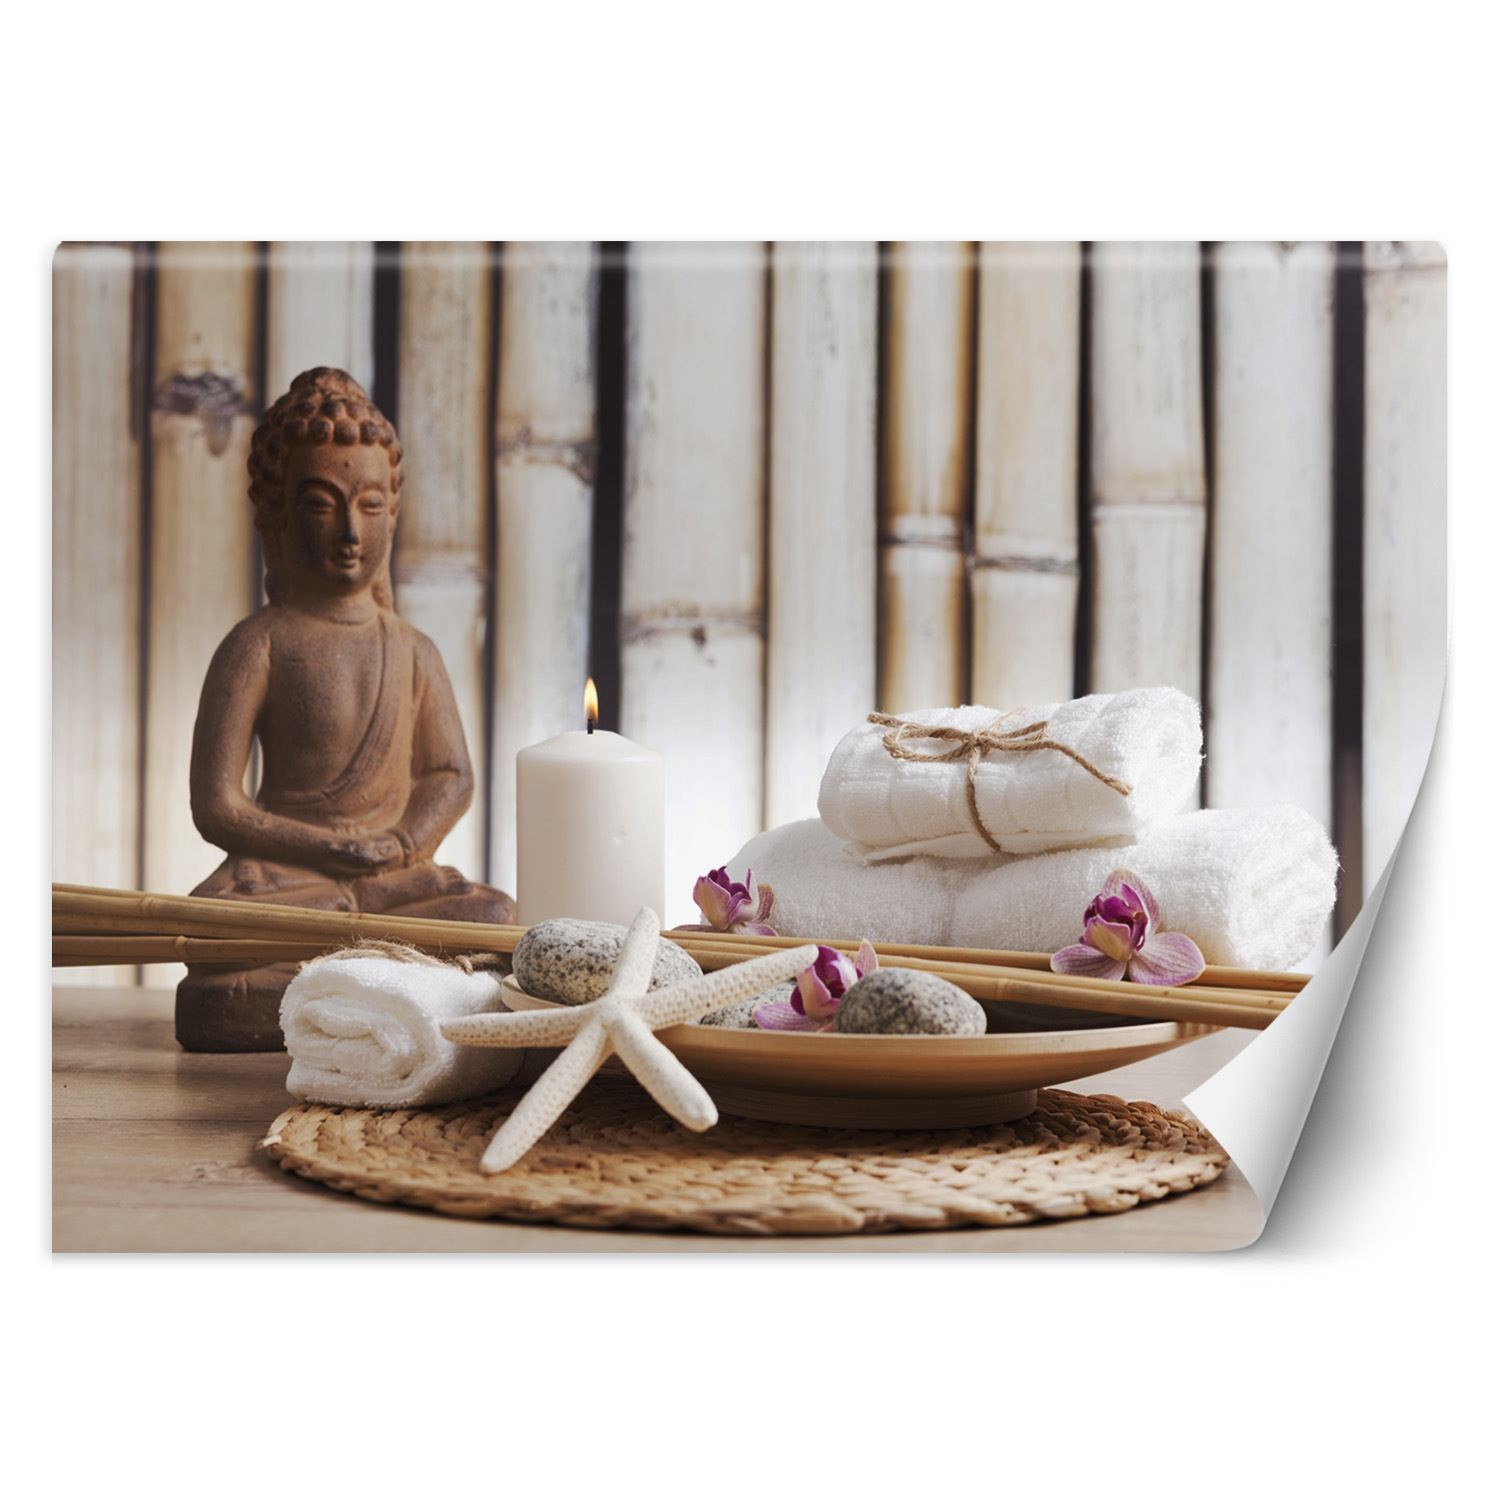 Trend24 – Behang – Standbeeld Van Boeddha In Spa – Behangpapier – Fotobehang – Behang Woonkamer – 450x315x2 cm – Incl. behanglijm